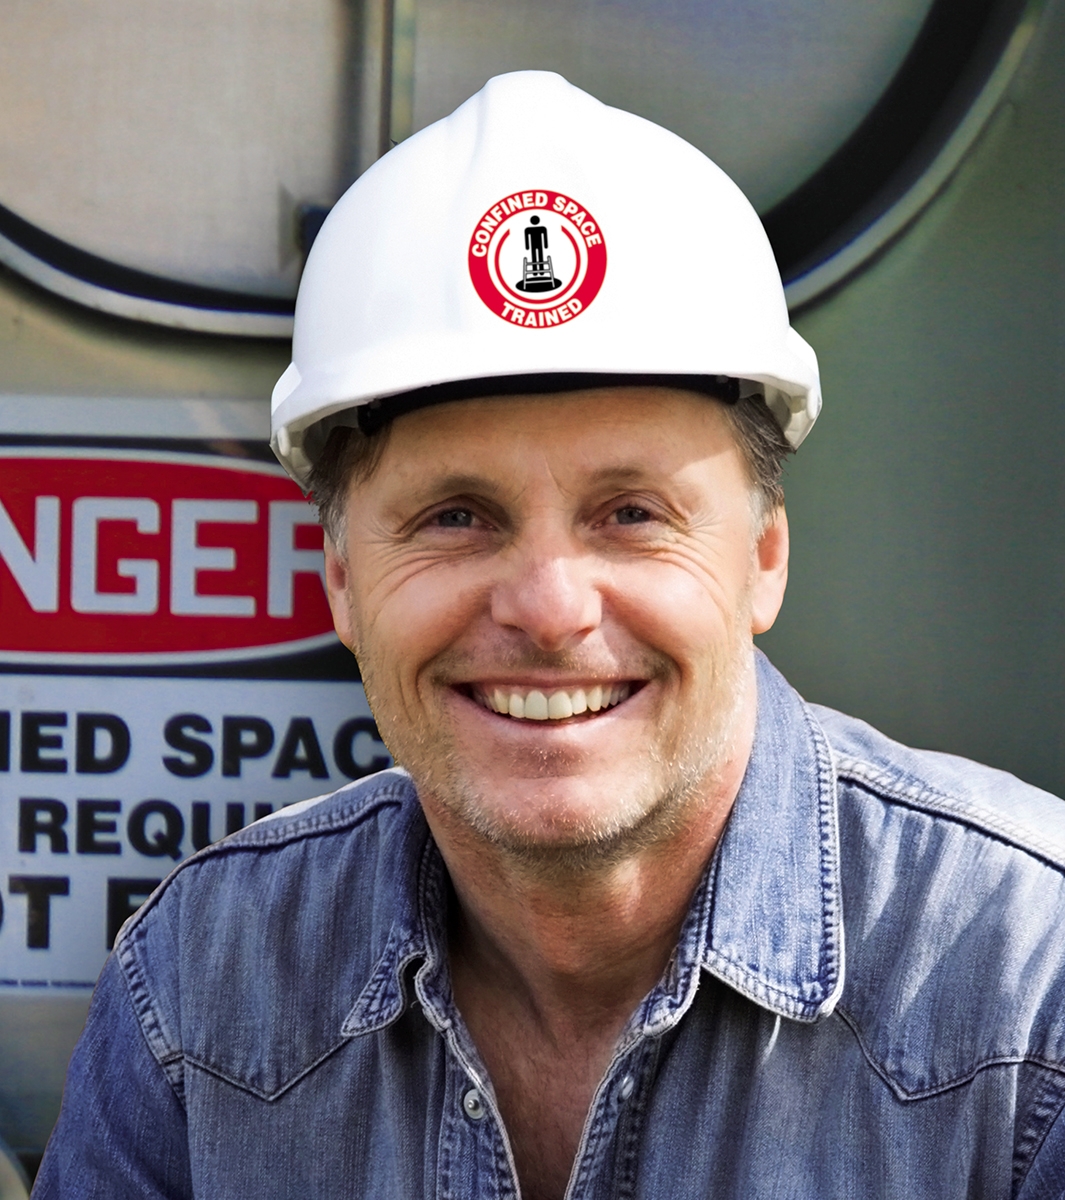 Hard Hat StickersDanger ENGINEERFunny Safety Helmet Decals Labels Foreman